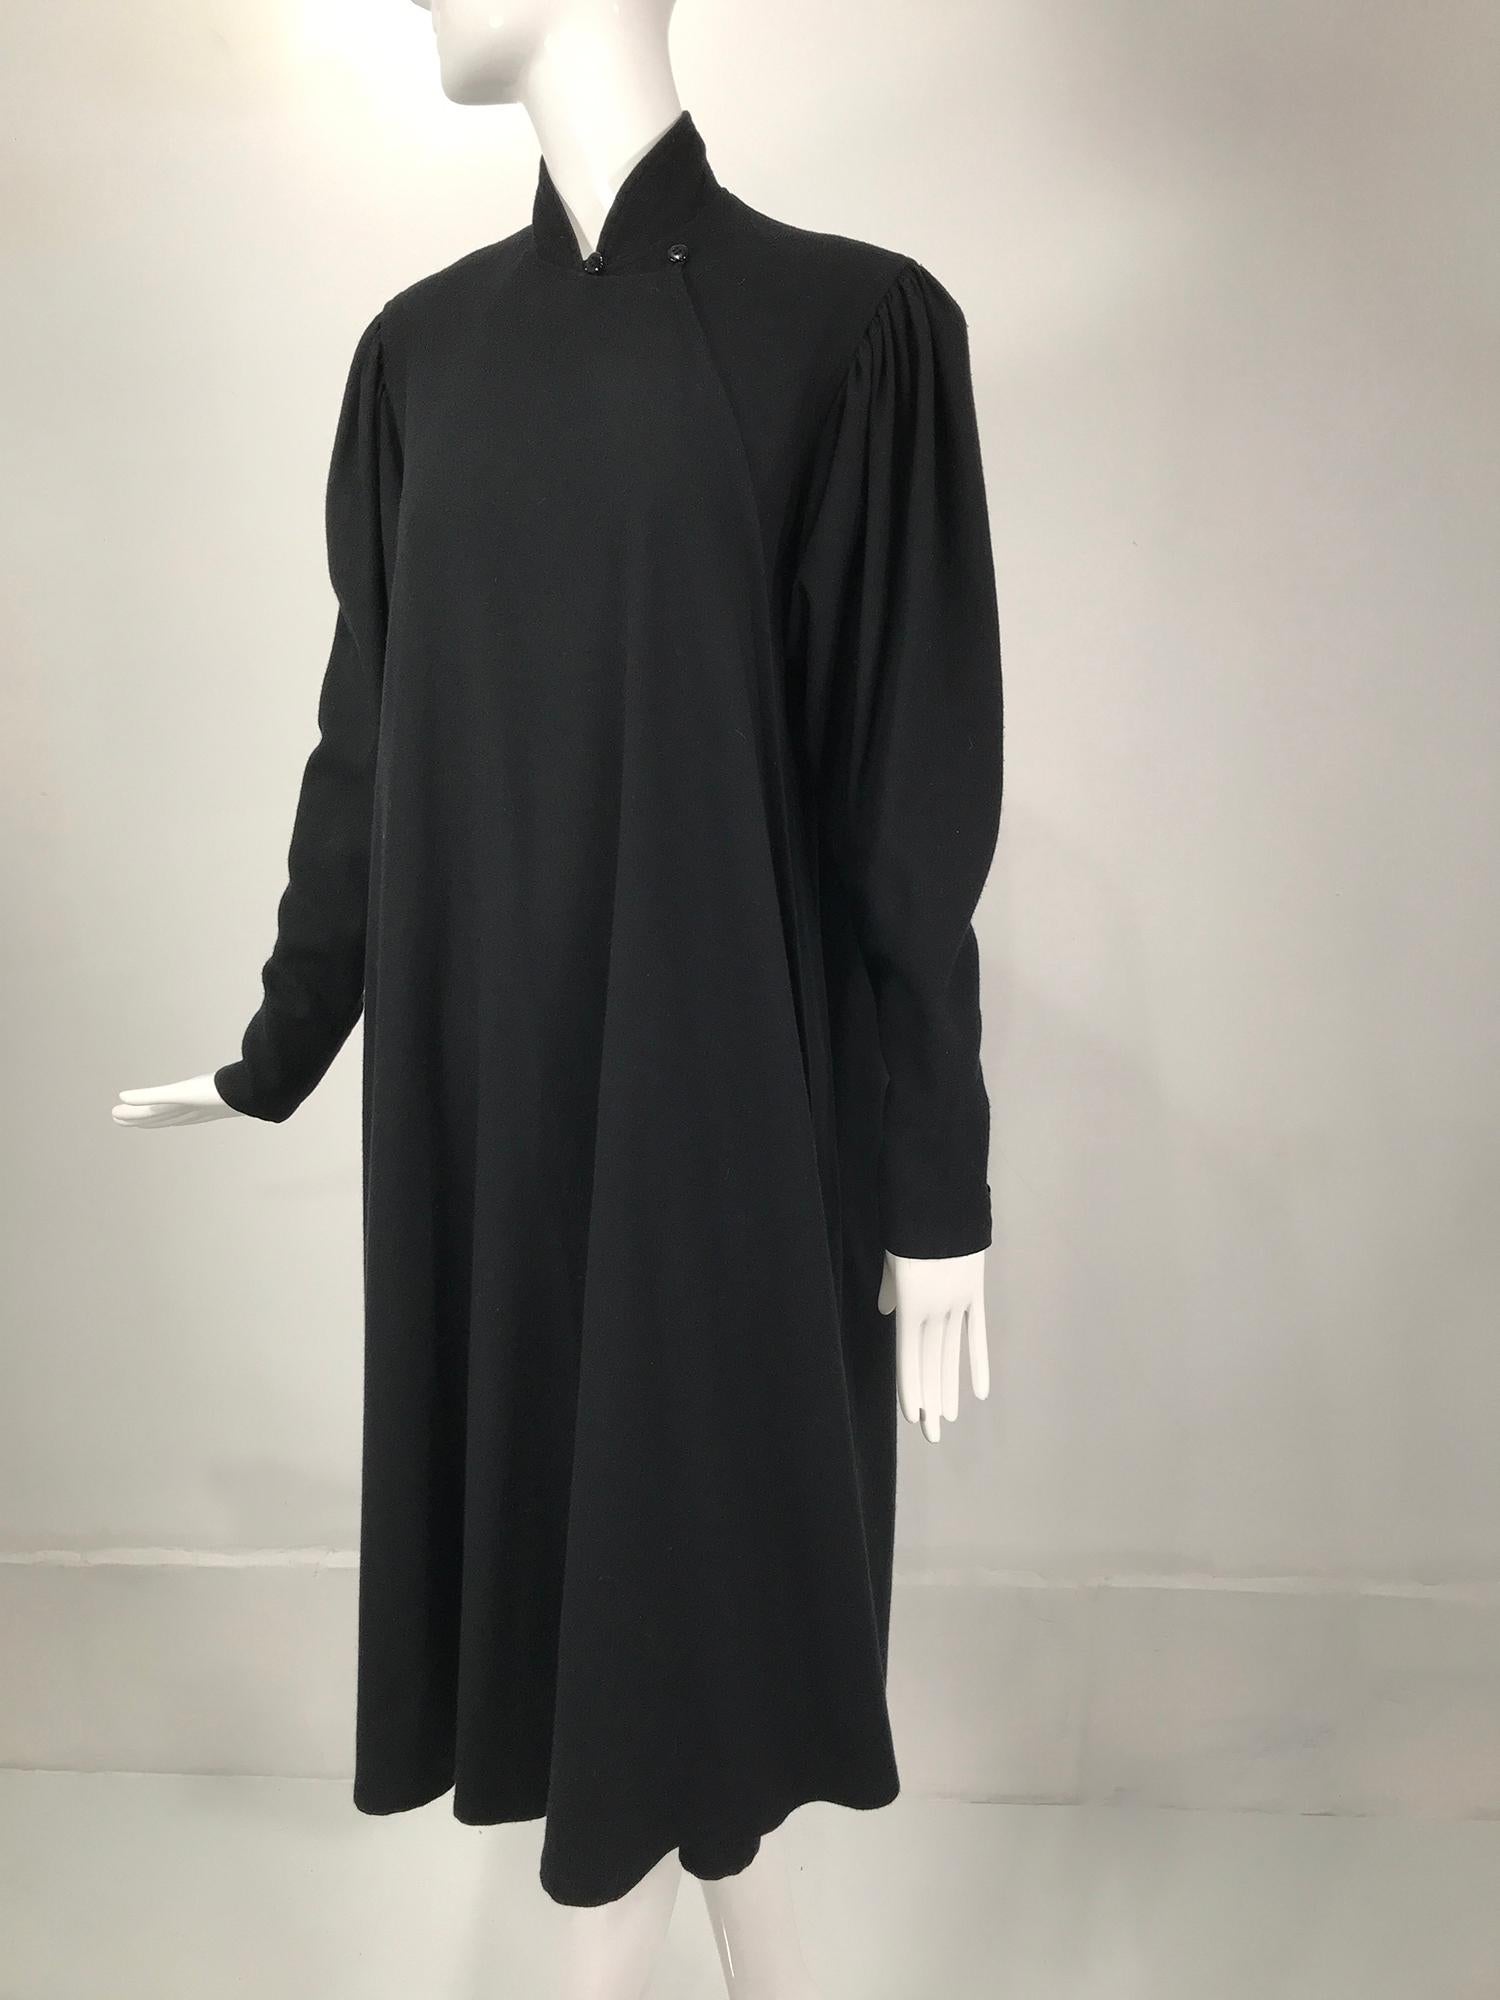 Manteau de style cheongsam en laine noire double face de Kenzo, datant des années 1980. Manteau inhabituel avec un col haut qui s'enroule sur le devant et se ferme à l'aide d'une double boucle et de boutons, s'achevant sur un modèle similaire à